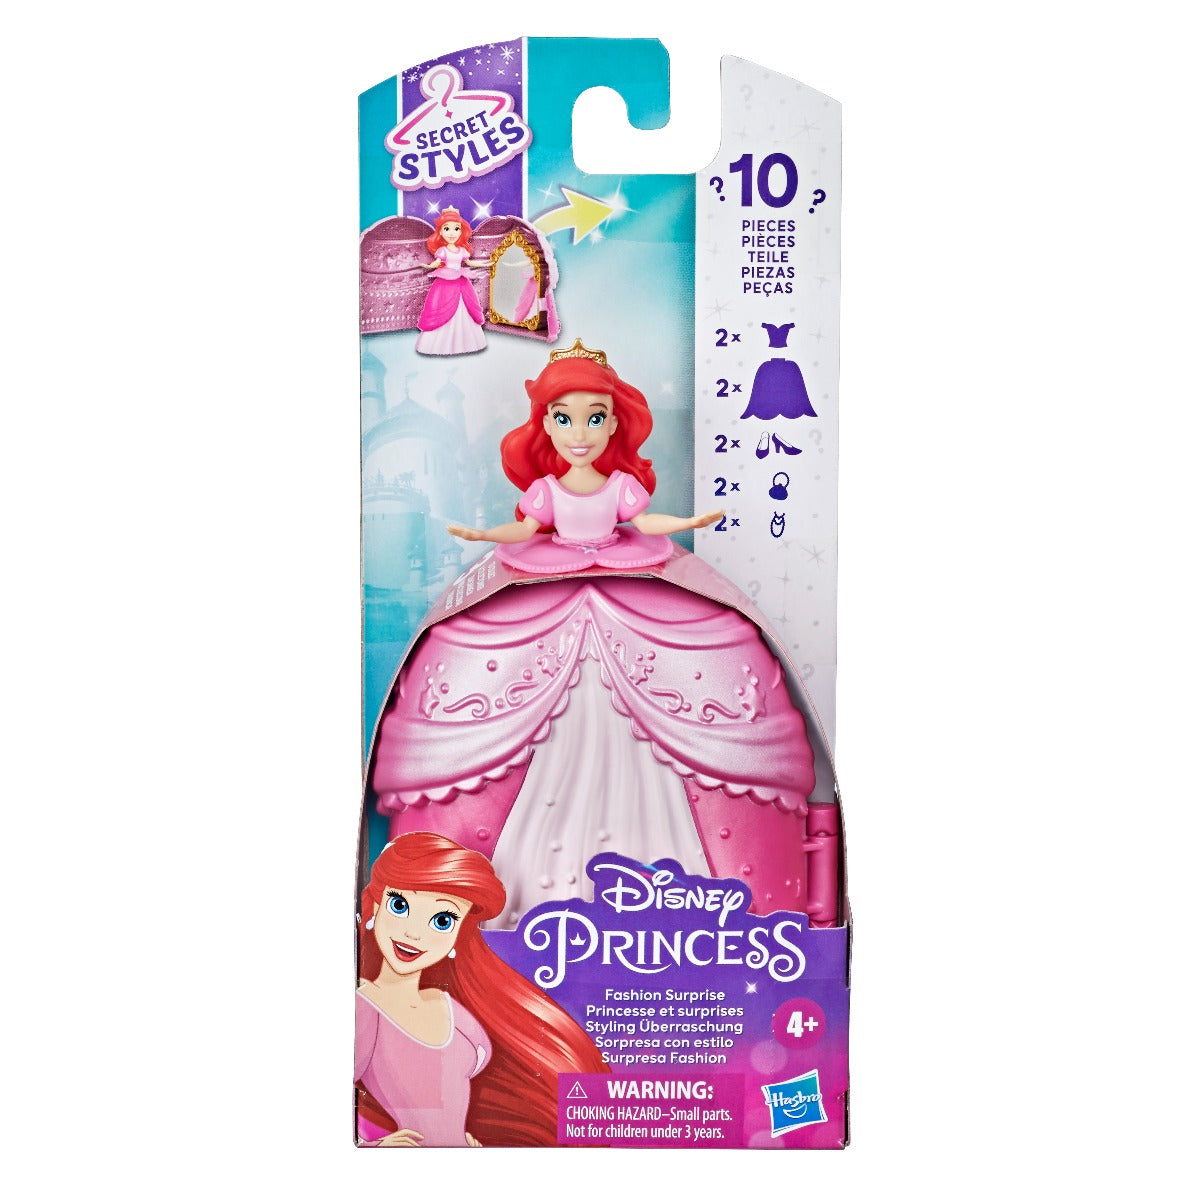 Công chúa Ariel và chiếc váy diệu kỳ